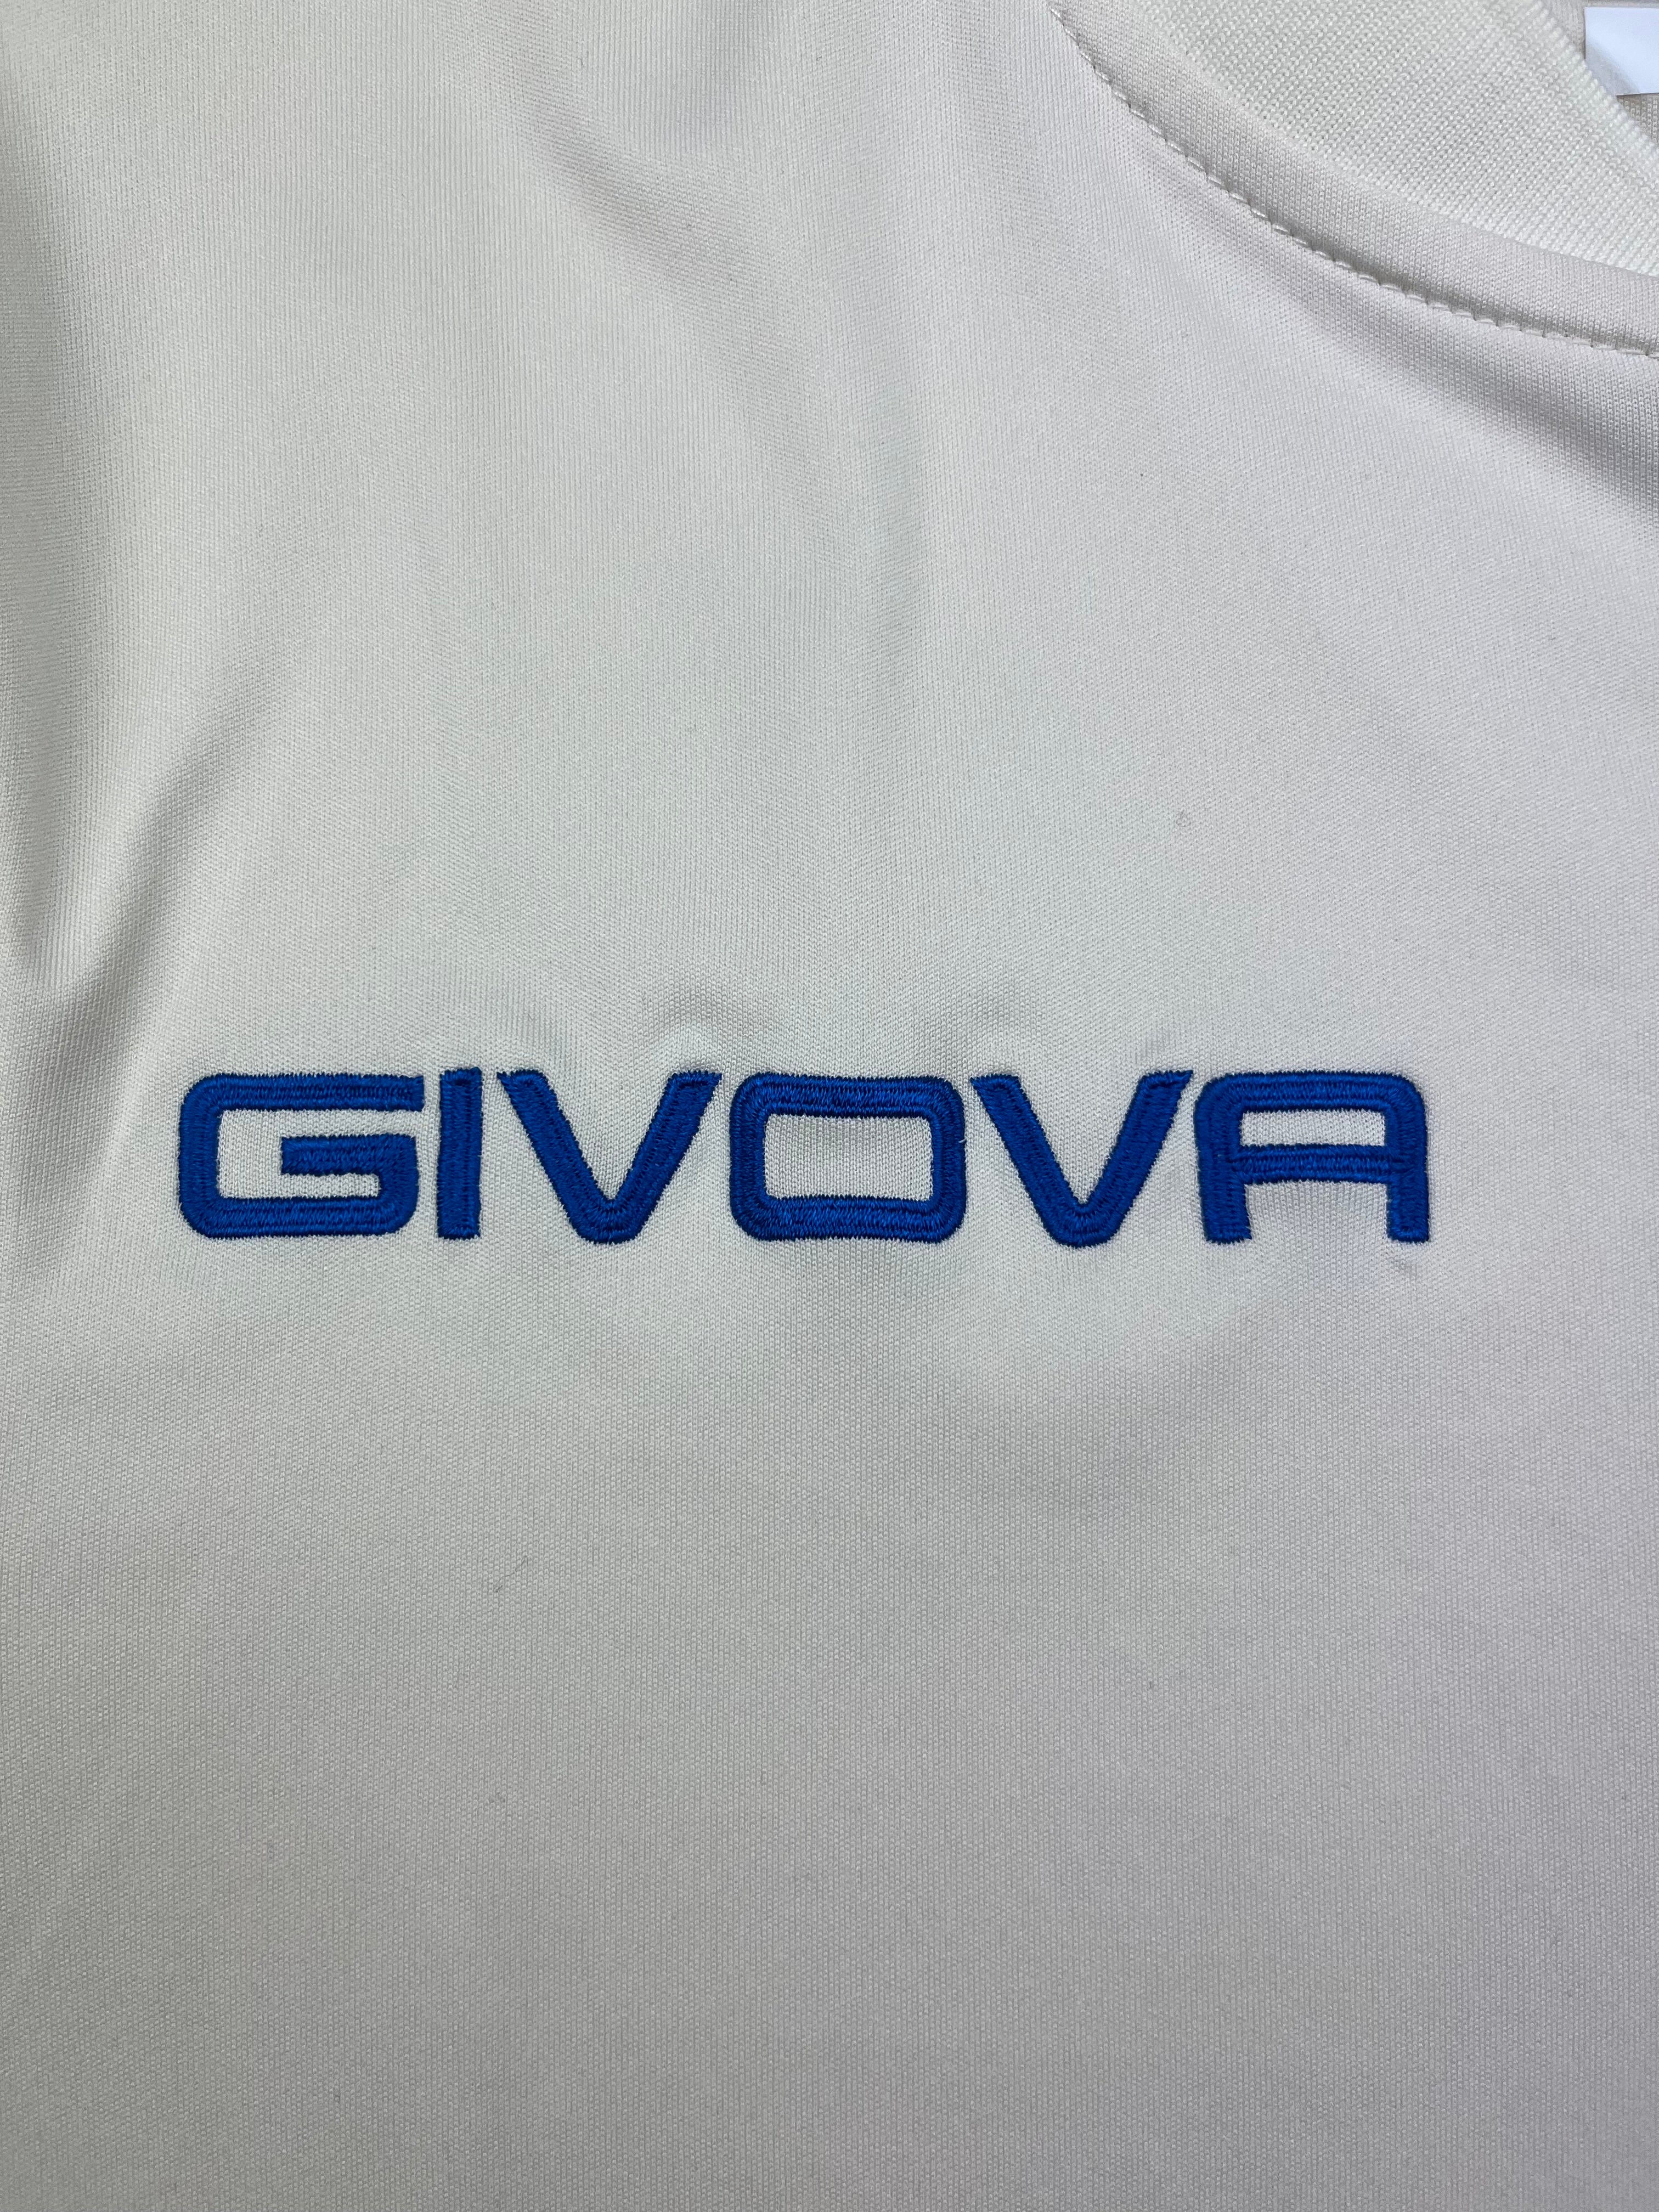 2019/20 Chievo Verona Away Shirt (M) 9/10